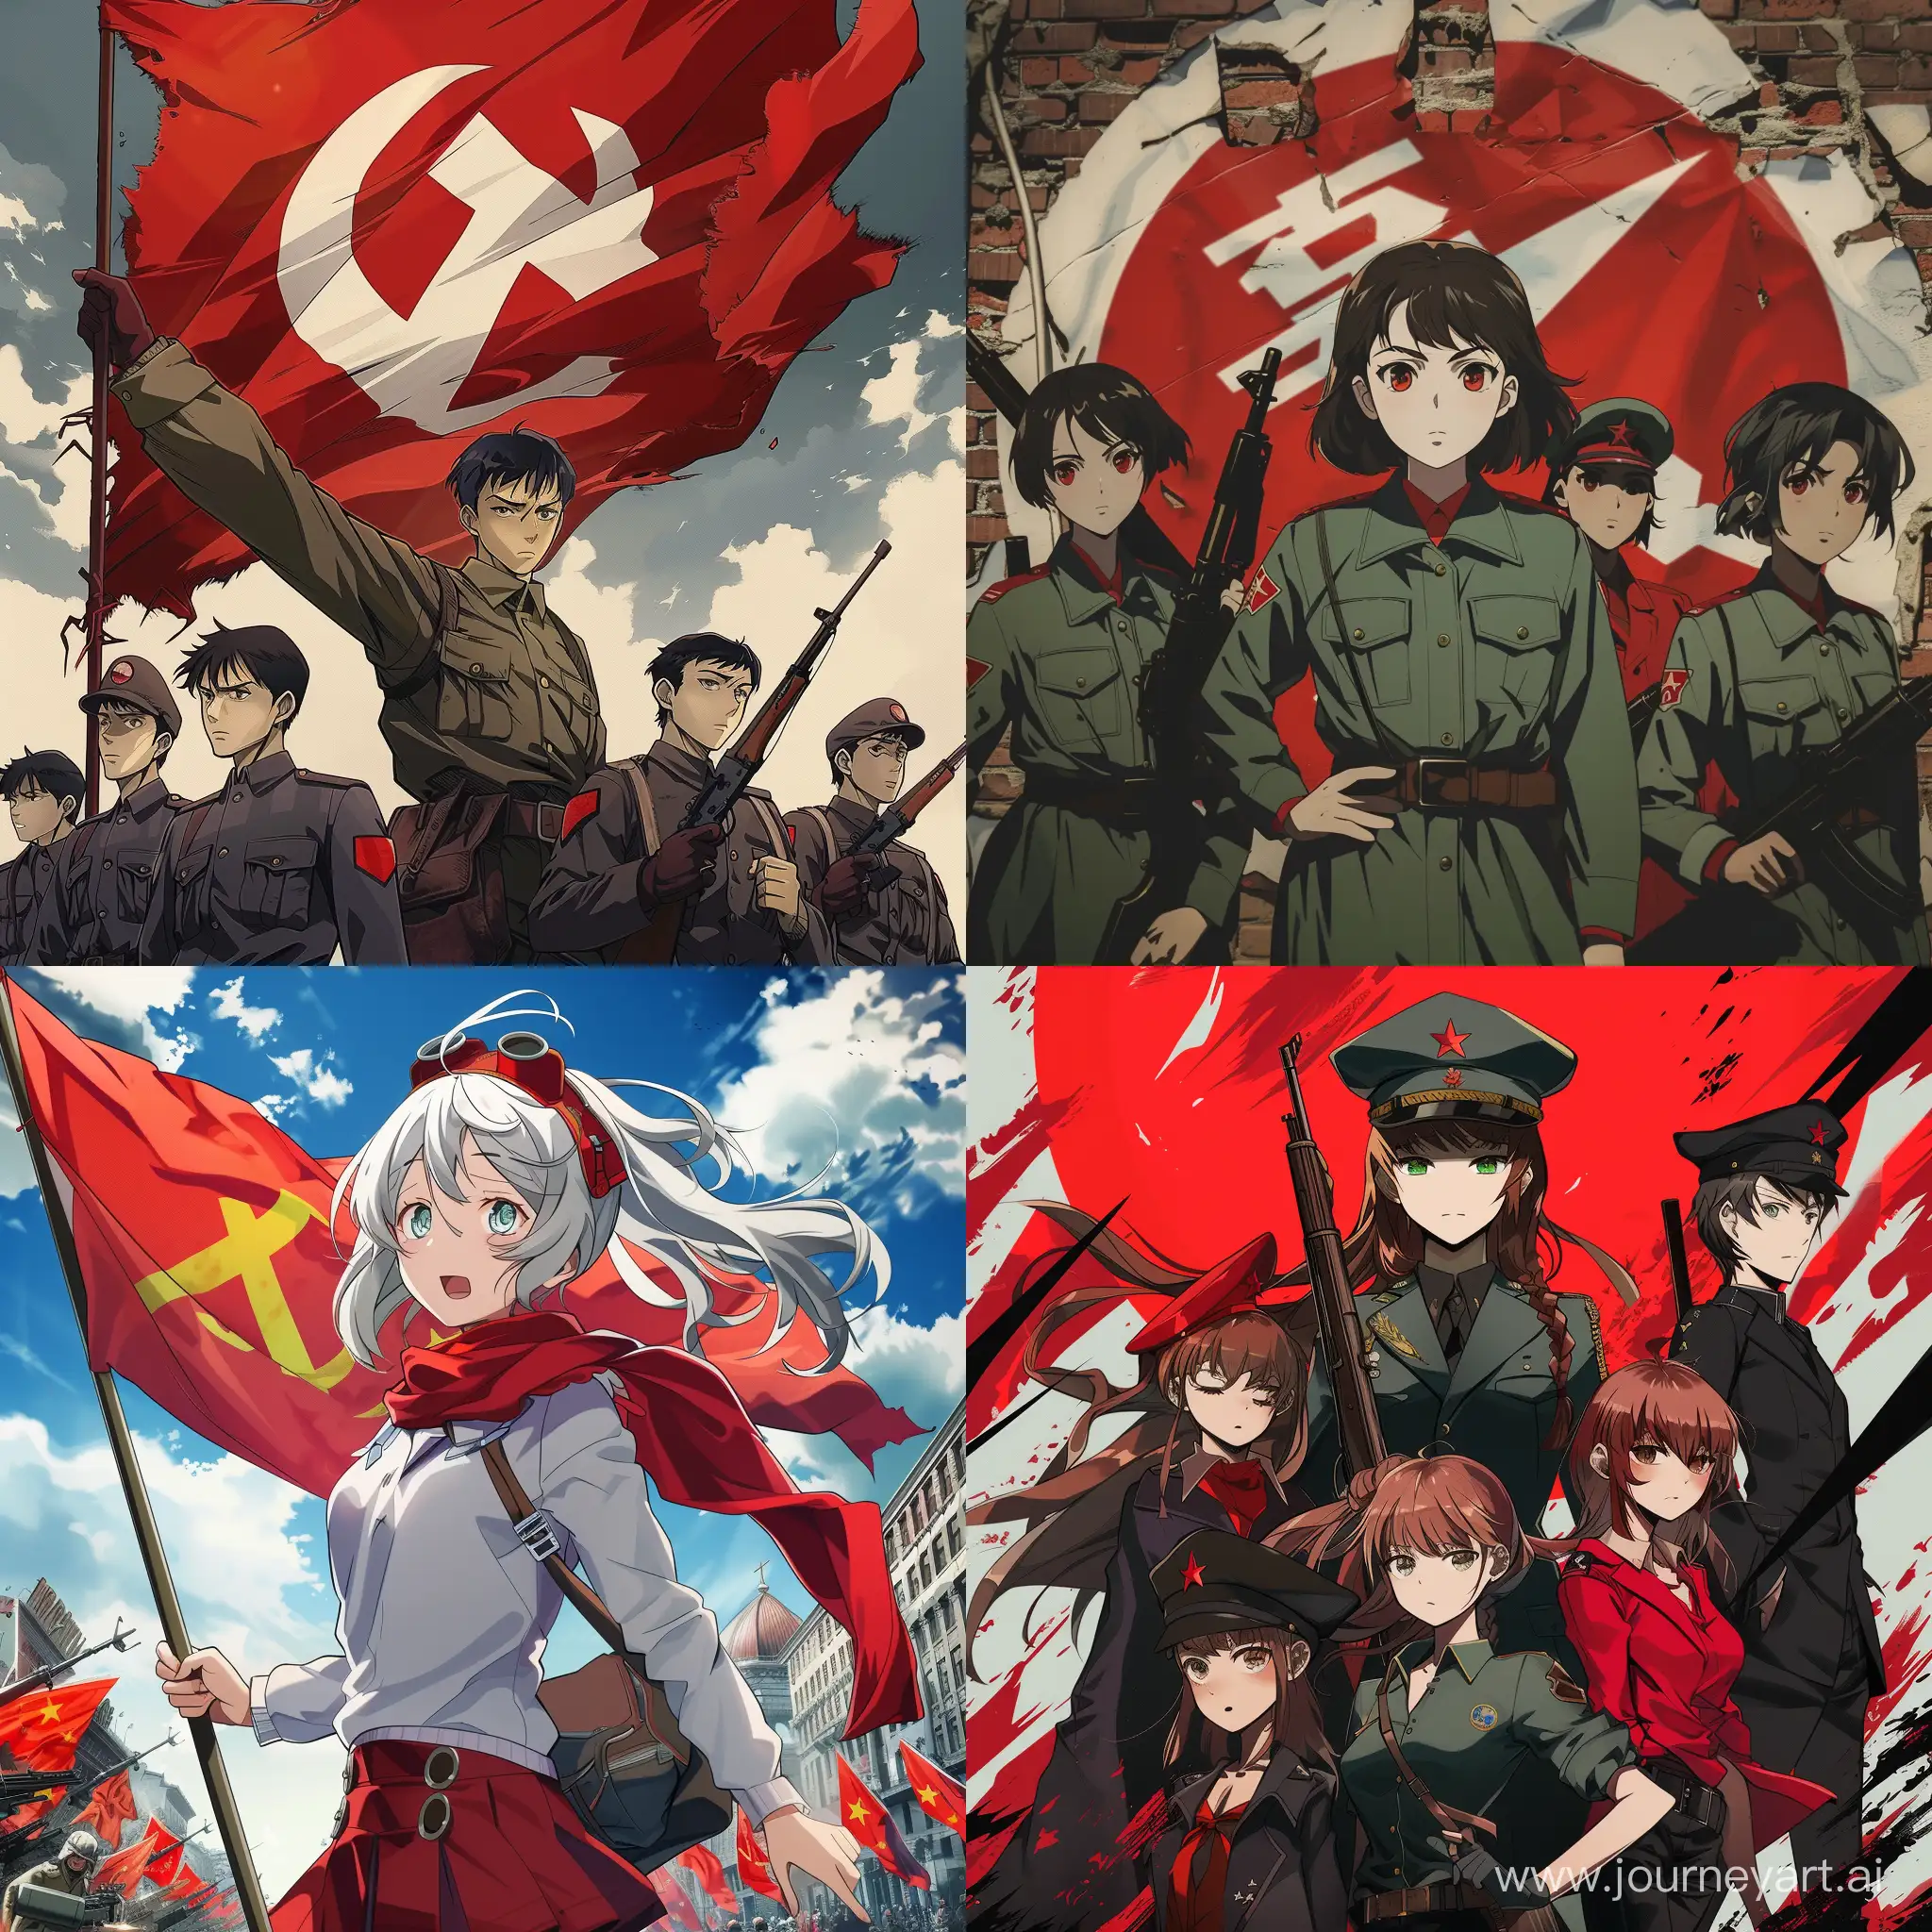 Аниме в стиле коммунизма